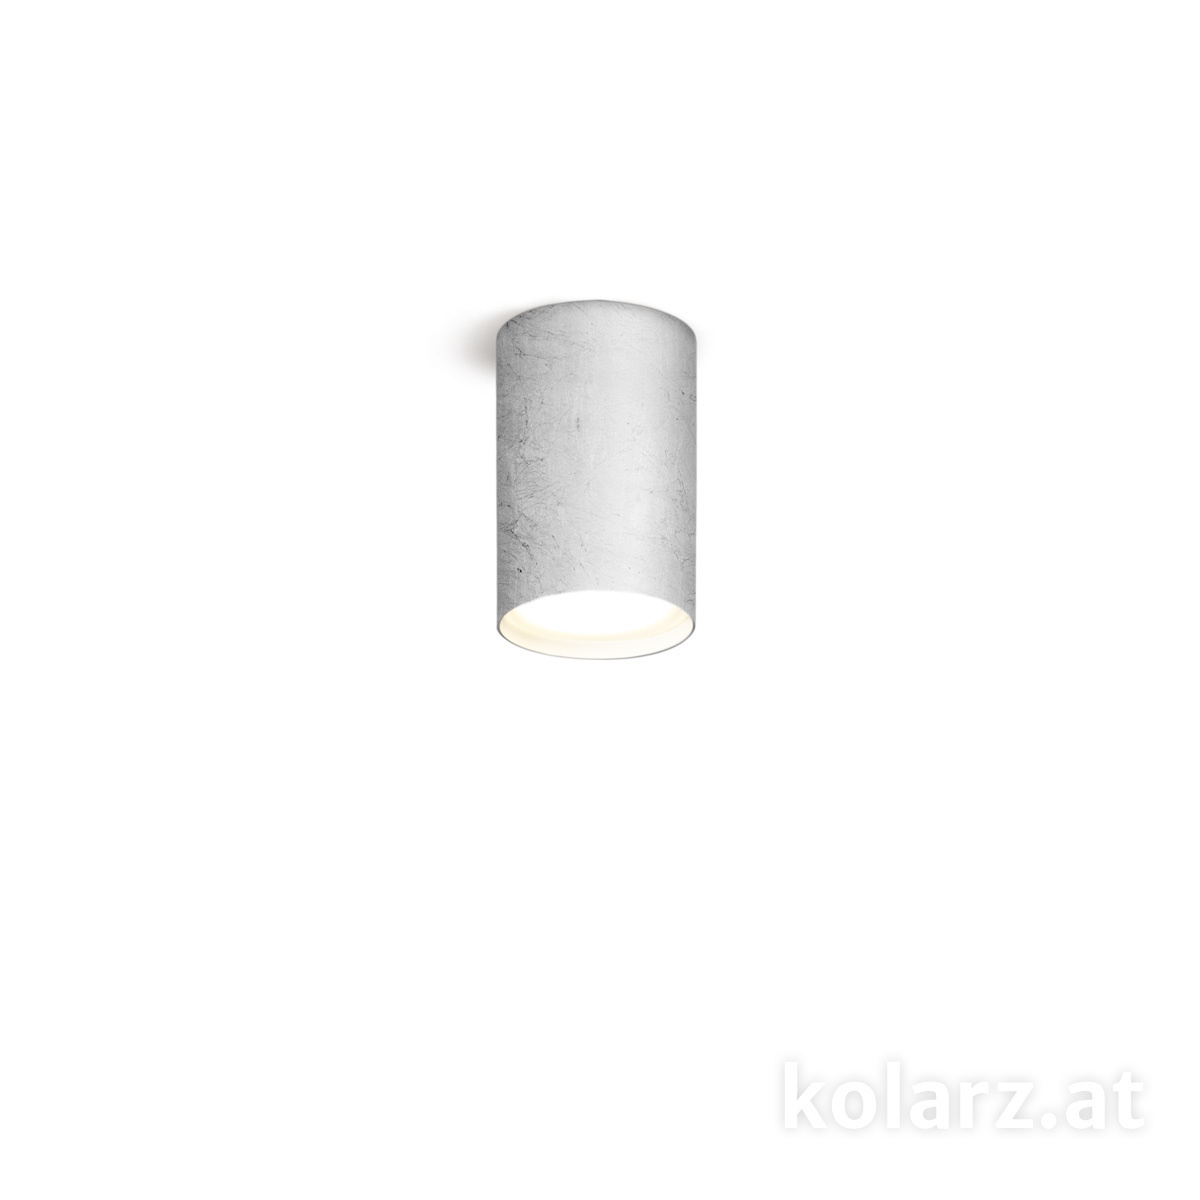 KOLARZ Leuchten Sonderangebote - Sale bei Deckenleuchten & Deckenlampen von KOLARZ Leuchten Spot TUBE, Leaf Silver, Ø8 Silber, Ø8cm, Höhe 10cm, 1-flammig, GX53 A1347.11.Ag/10